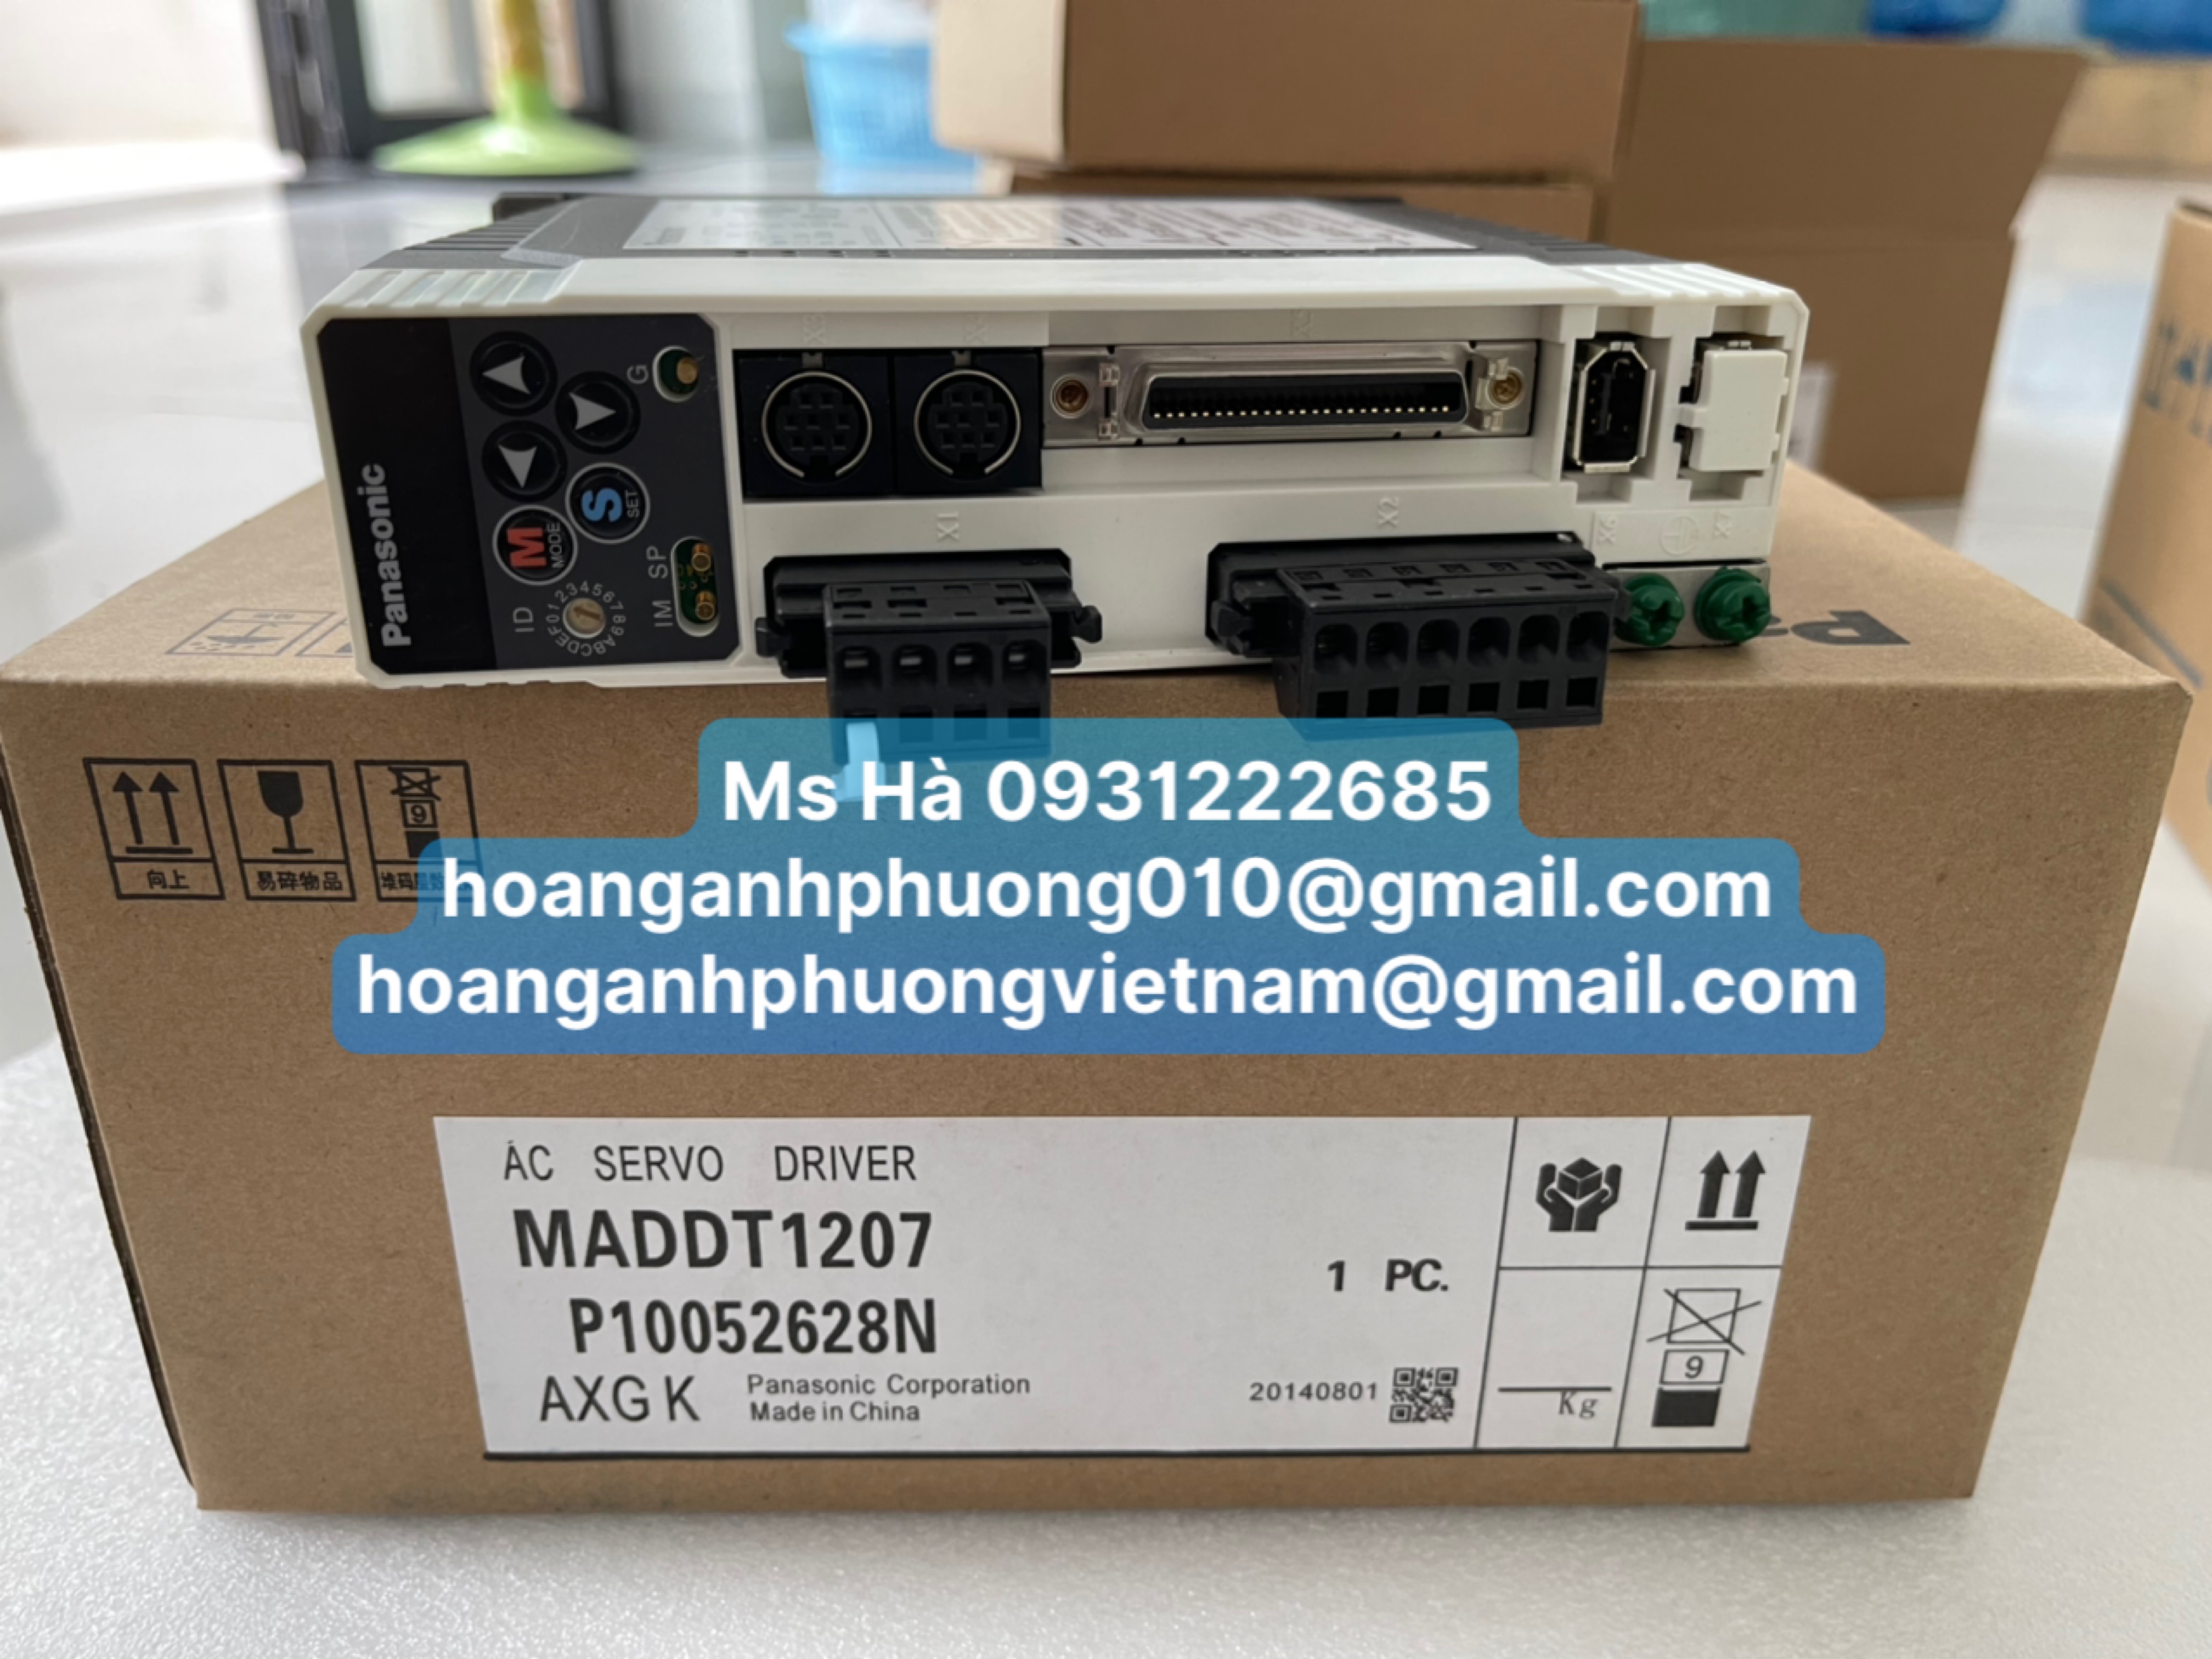 MADDT1207 - Bộ điều khiển - C&ocircng Ty Ho&agraveng Anh Phương 